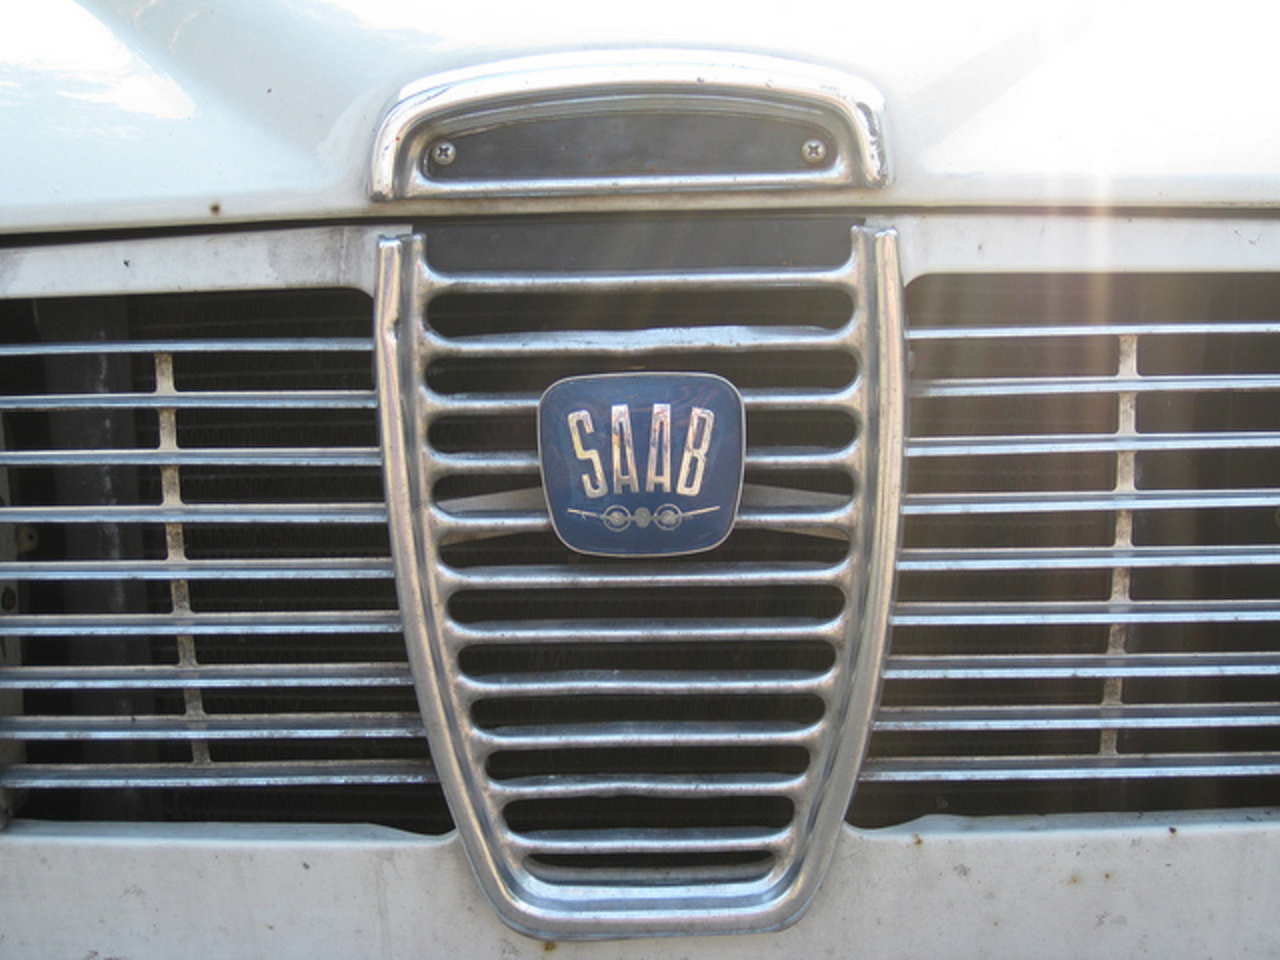 Saab - a set on Flickr